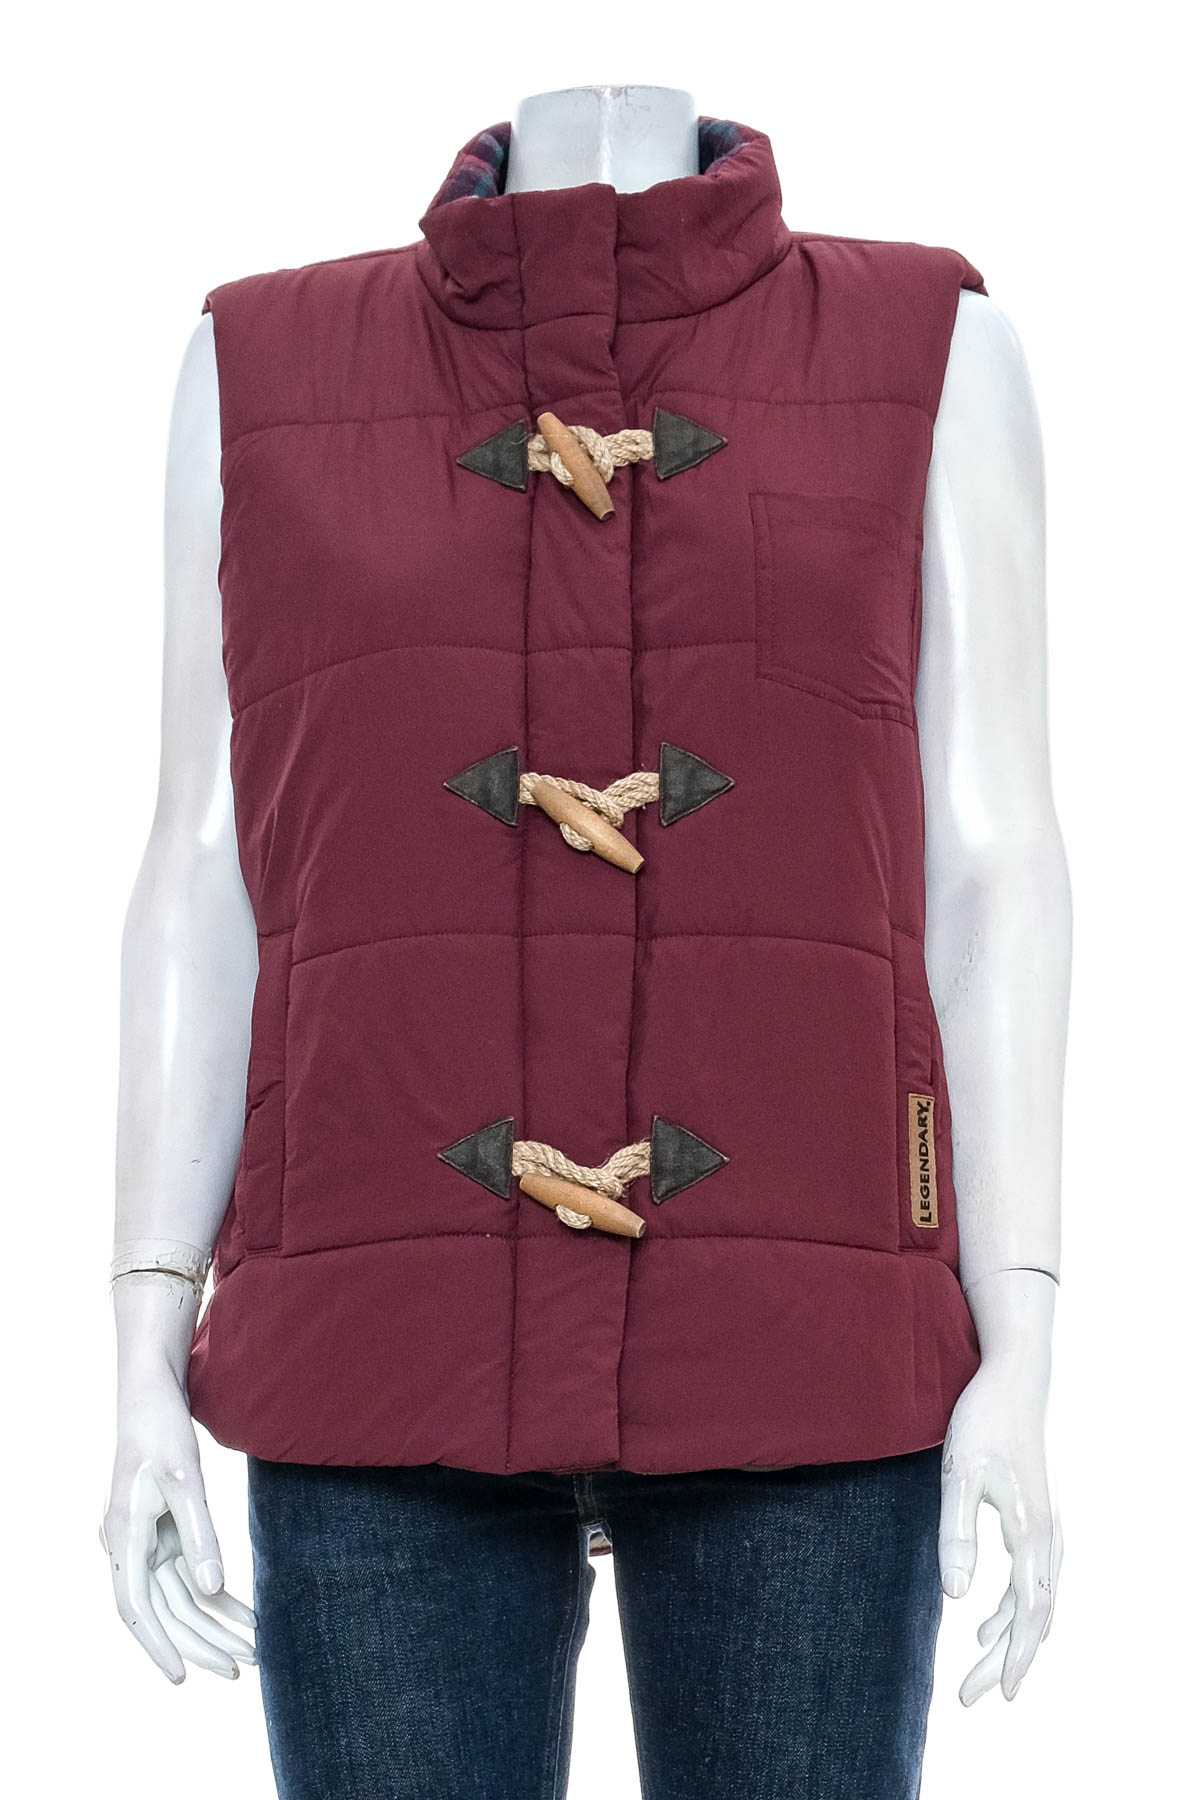 Women's vest - Legendary Whitetails - 0